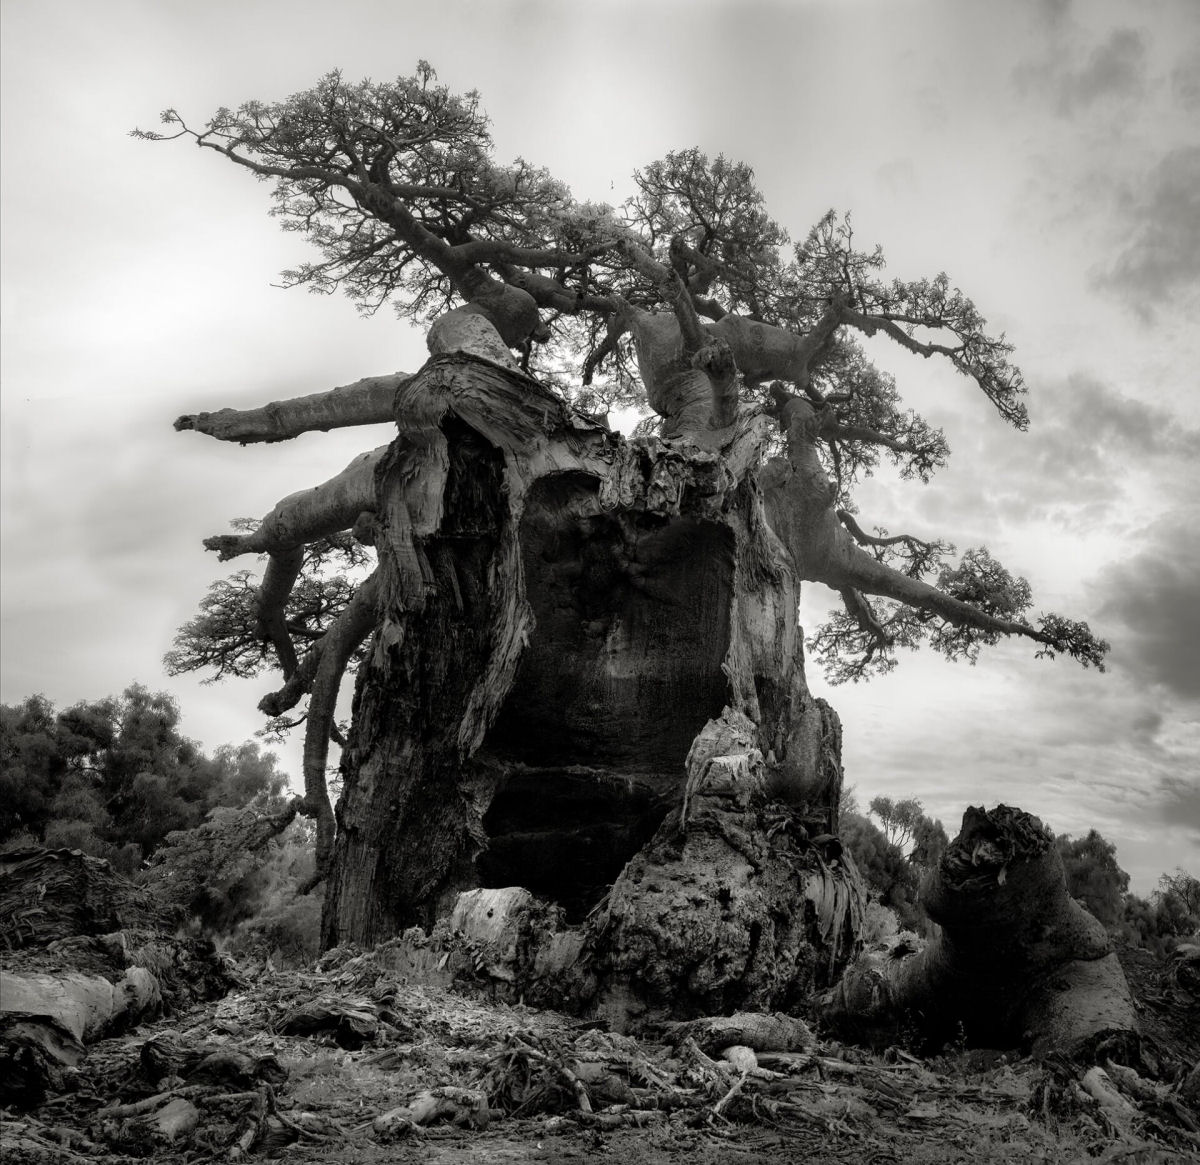 Fotos P&B mostram a população cada vez menor de antigos baobás de Madagascar 02